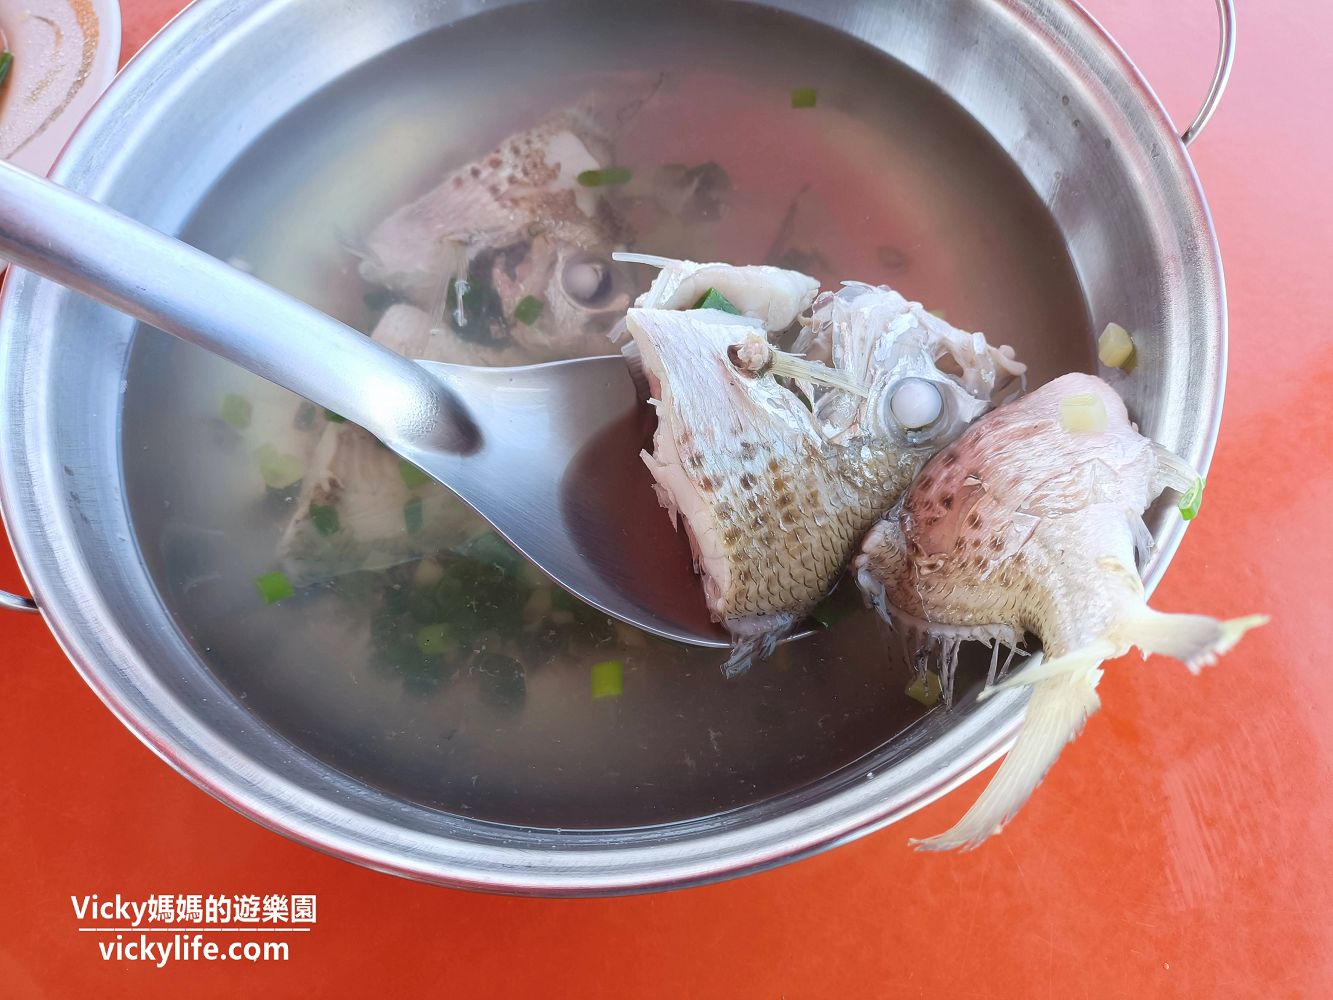 屏東美食︱新園 秋雄鮮魚小吃：在廟埕前享用新鮮美味的海鮮料理好過癮